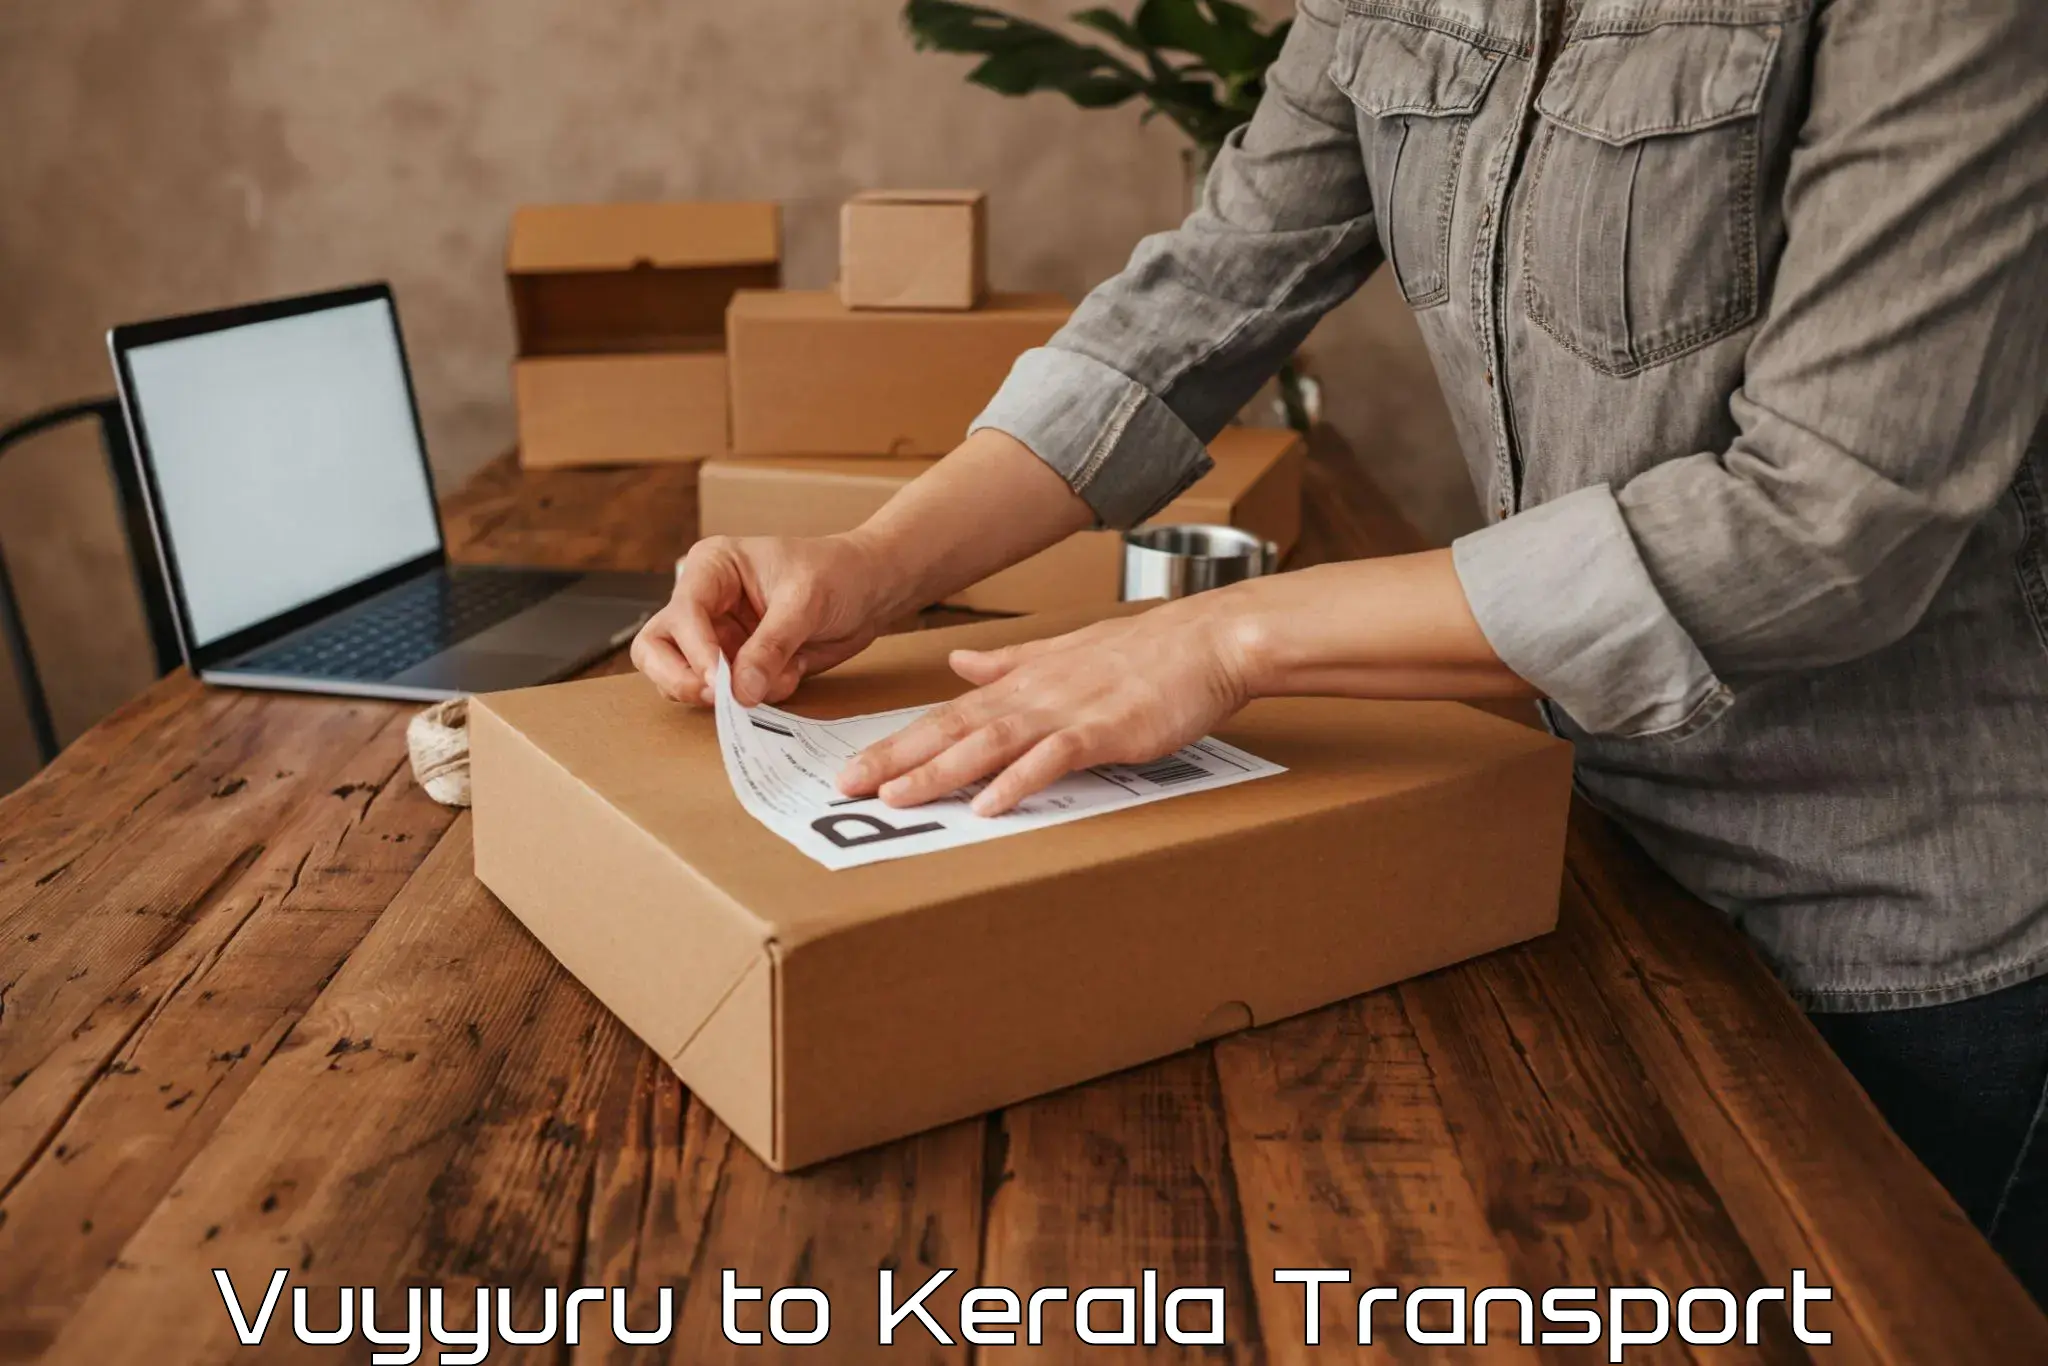 Air cargo transport services in Vuyyuru to Kalpetta